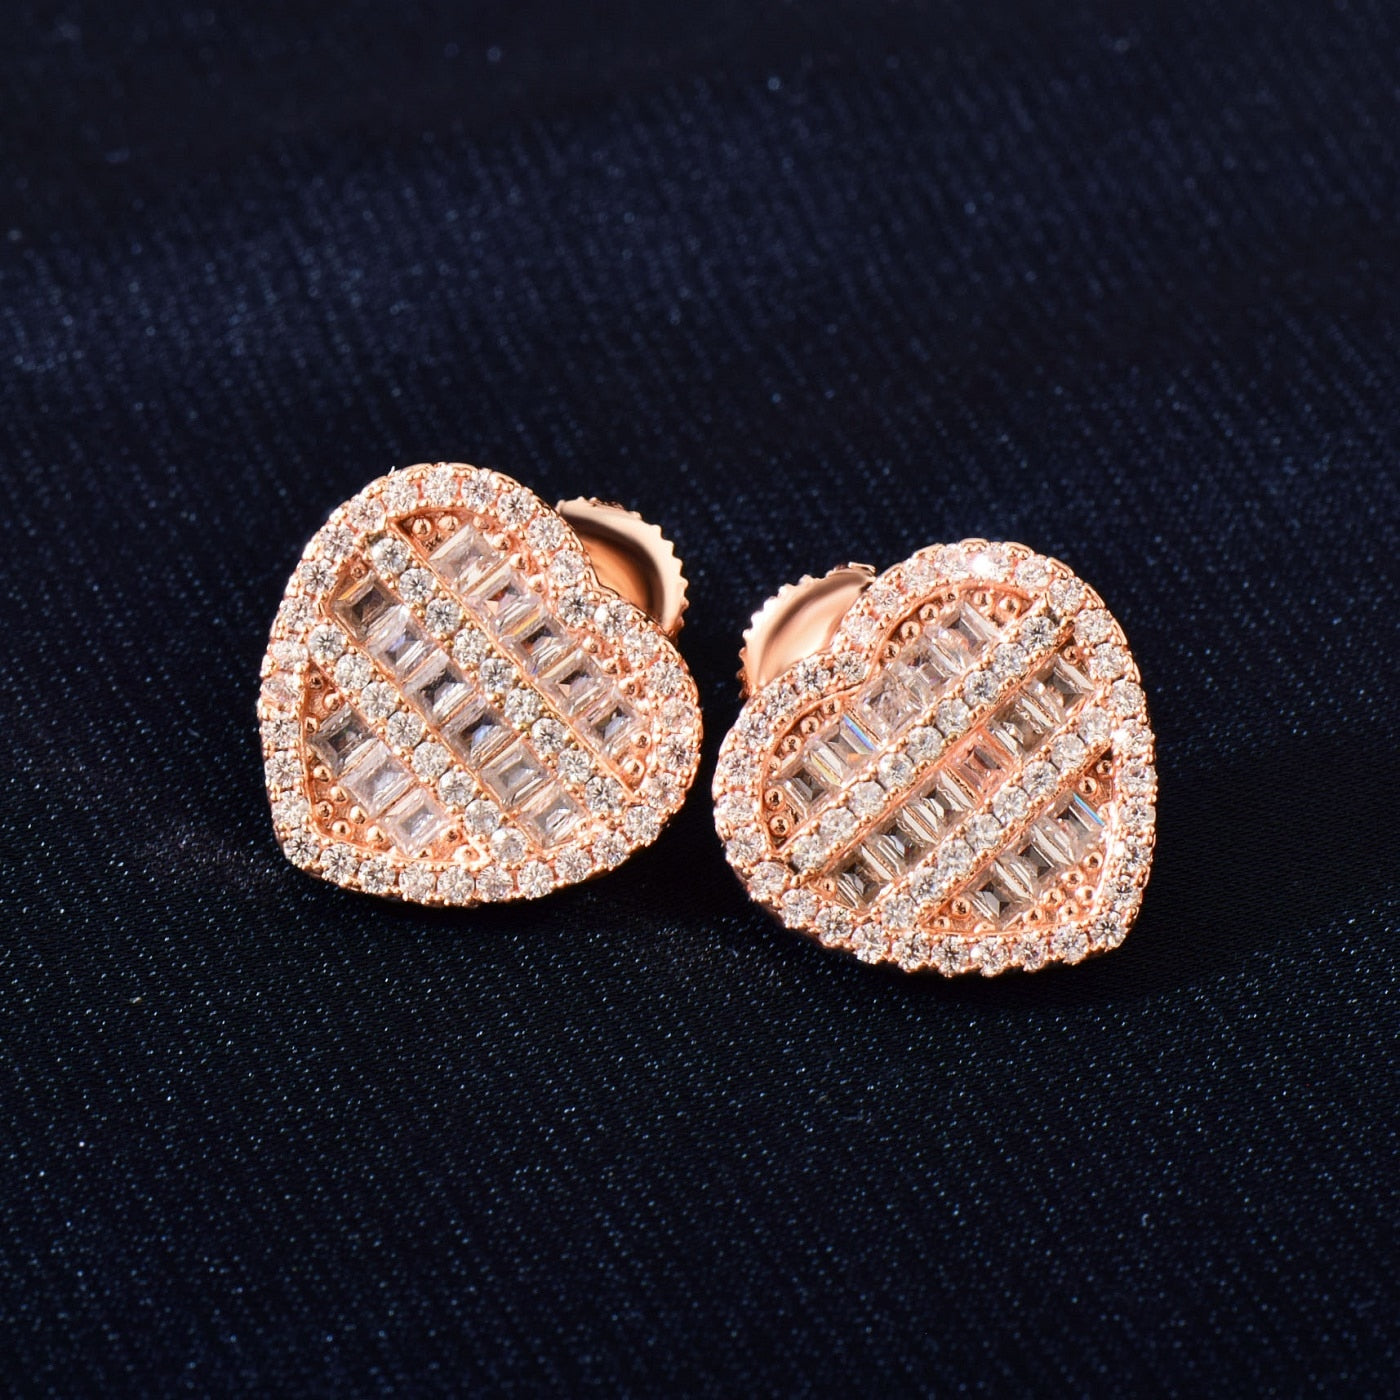 Diamond Heart Earrings | Heart Stud Earrings | Heart Earrings